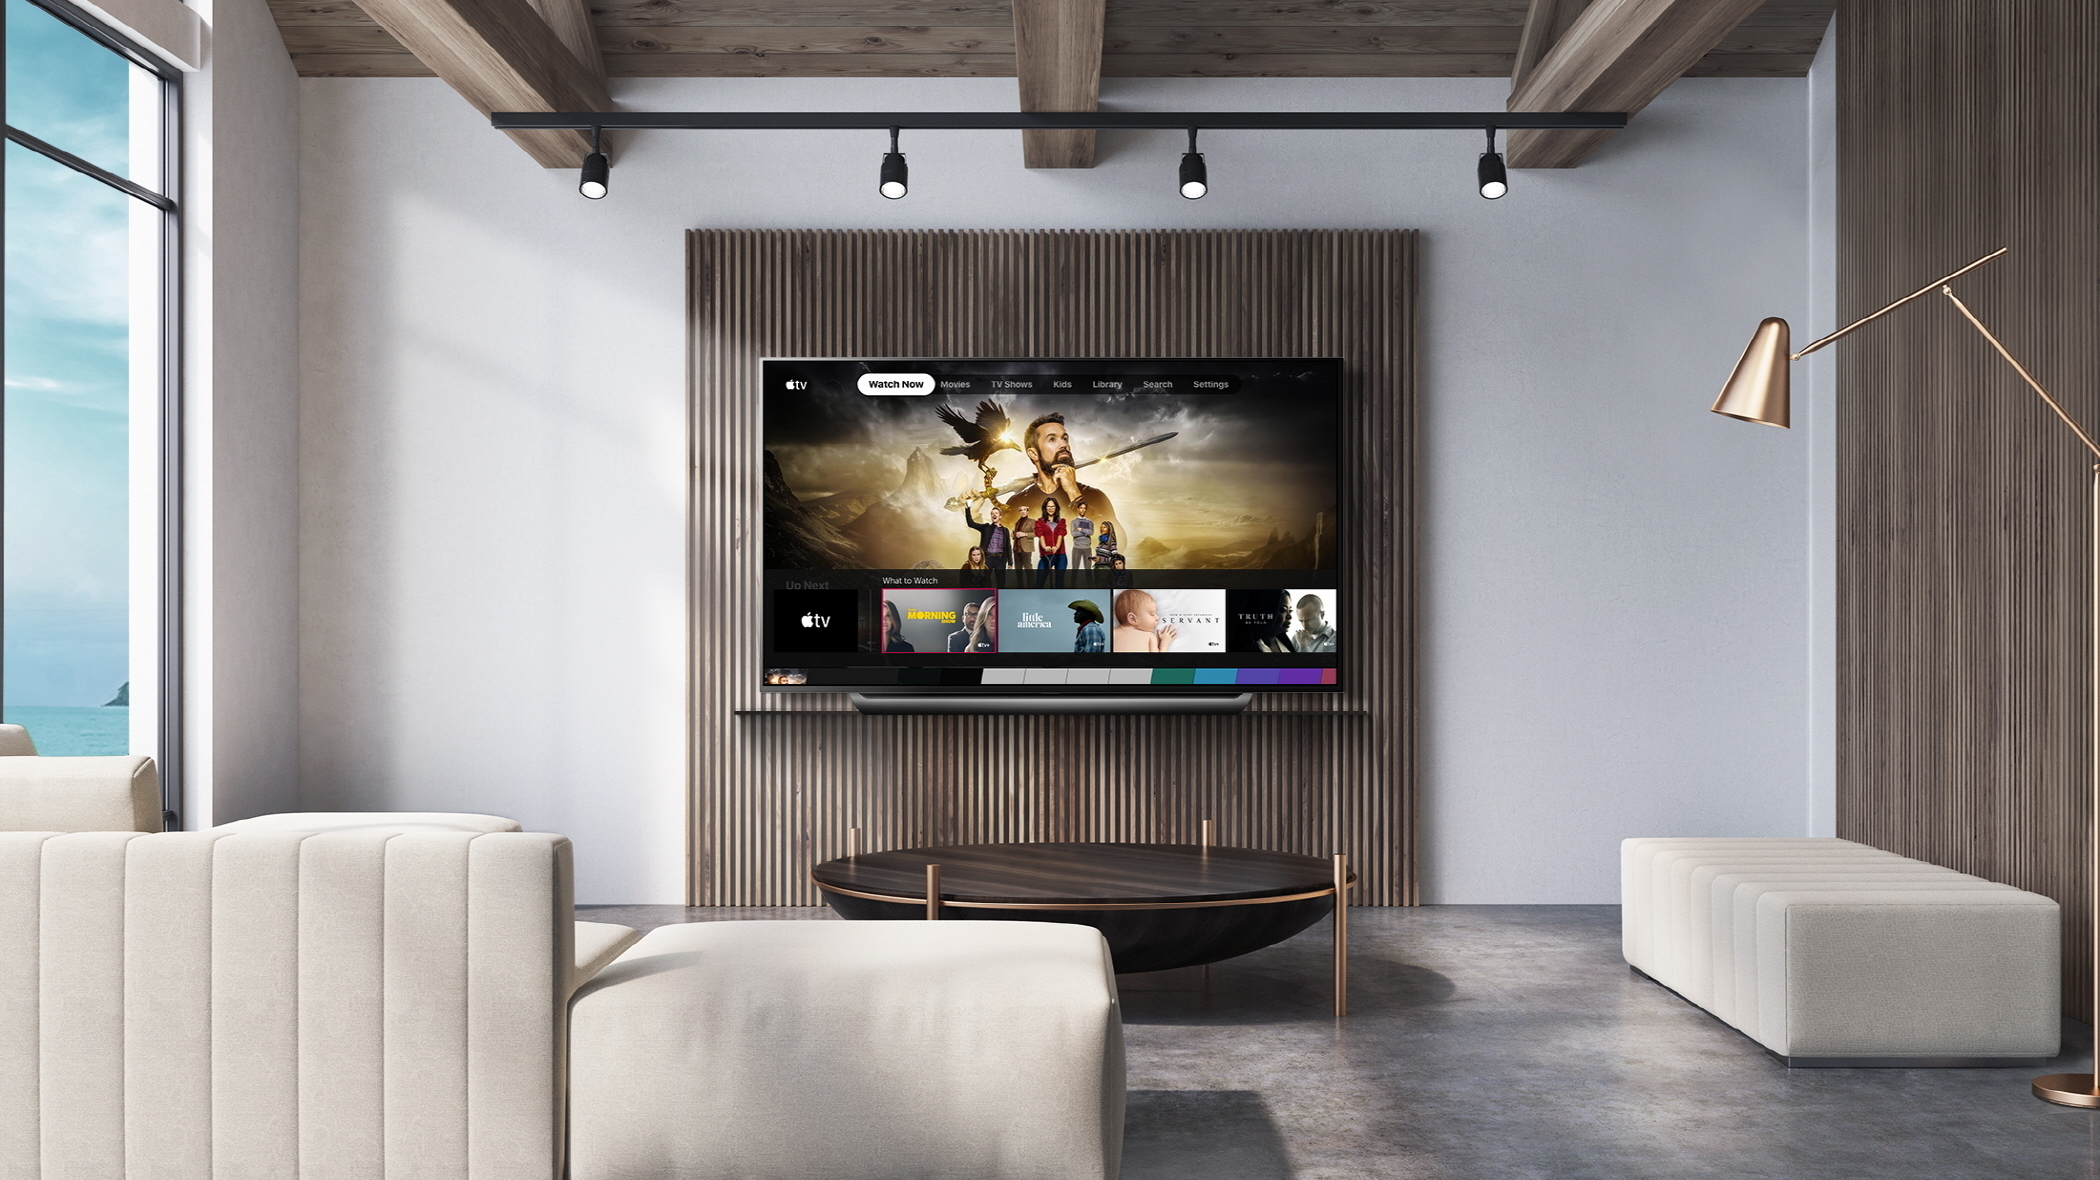 Apples TV-App landet auf LG-Fernsehern | heise online